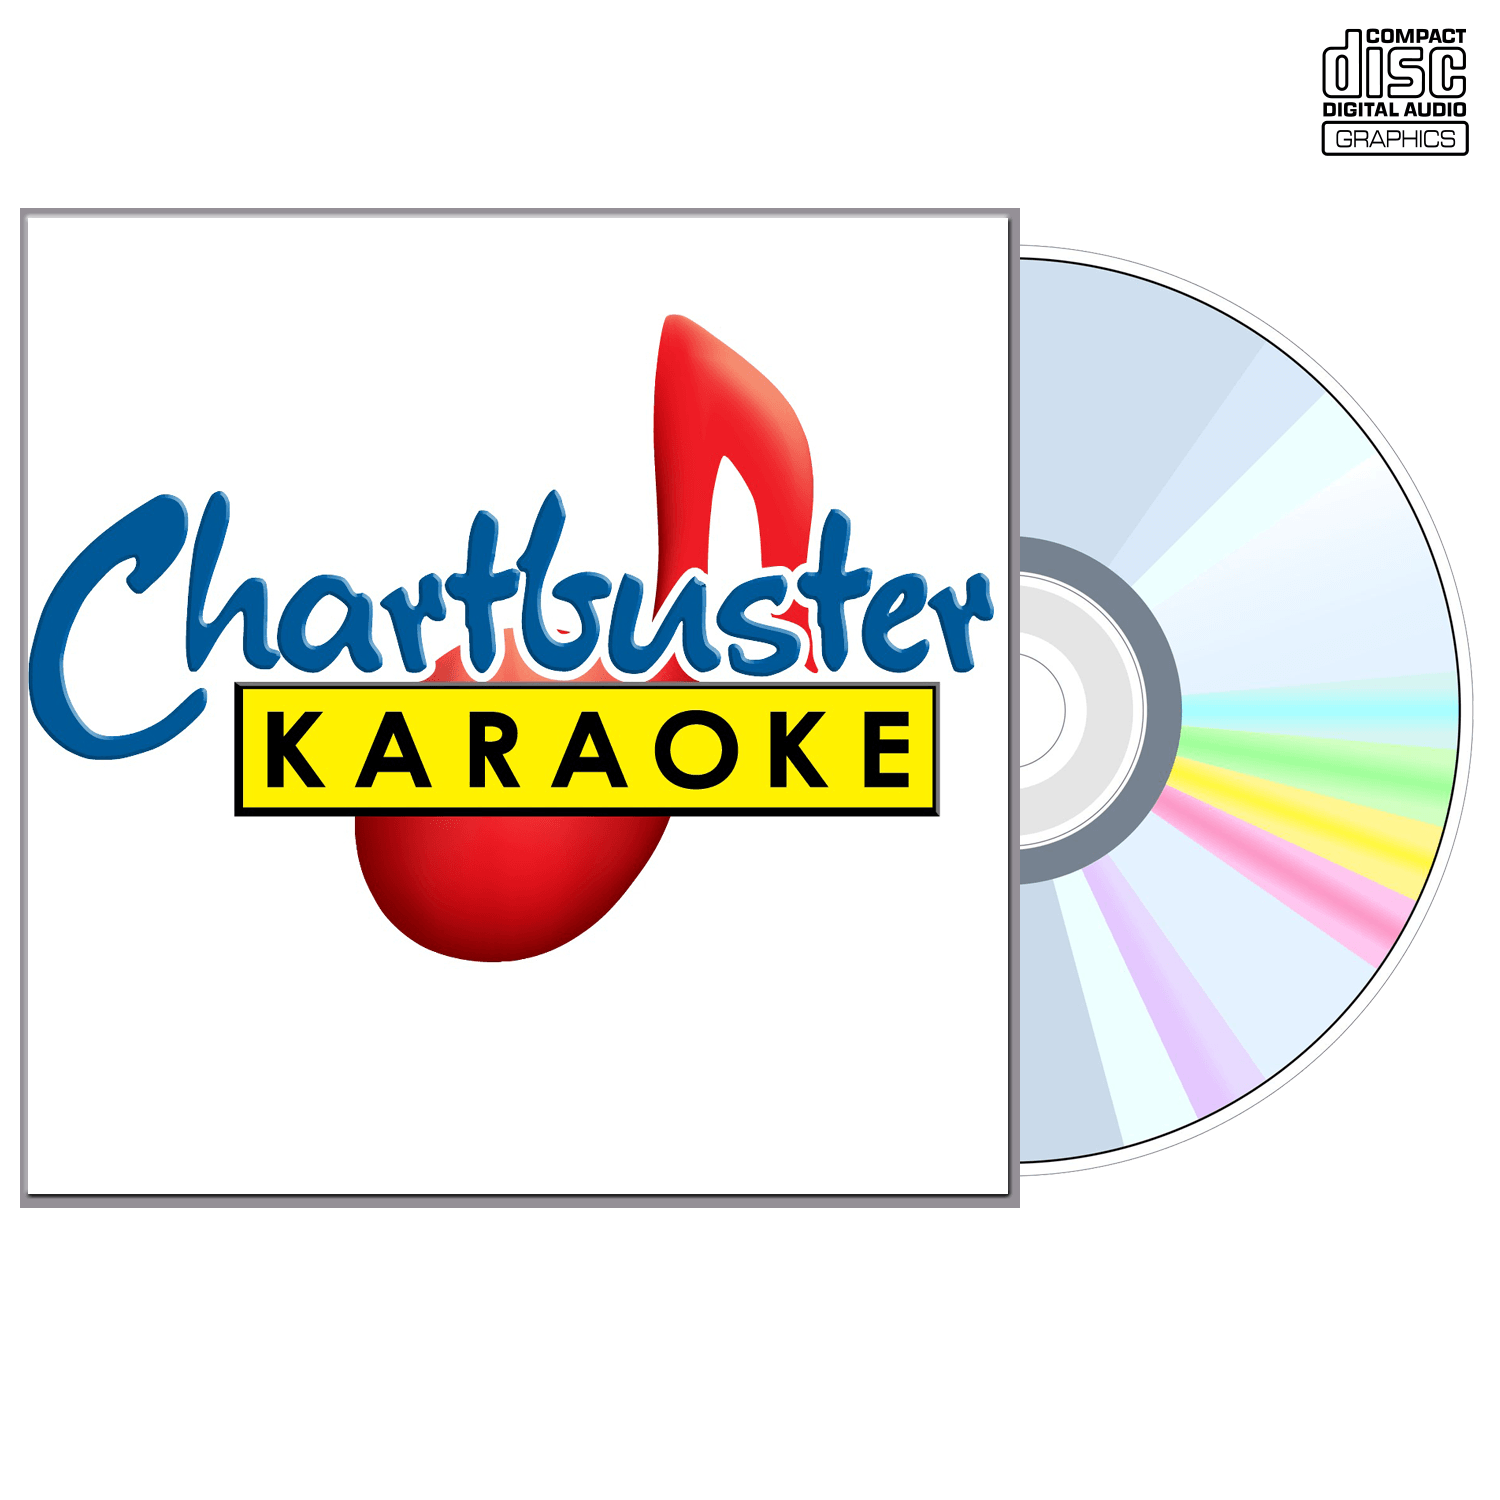 U2 - CD+G - Chartbuster Karaoke - Karaoke Home Entertainment